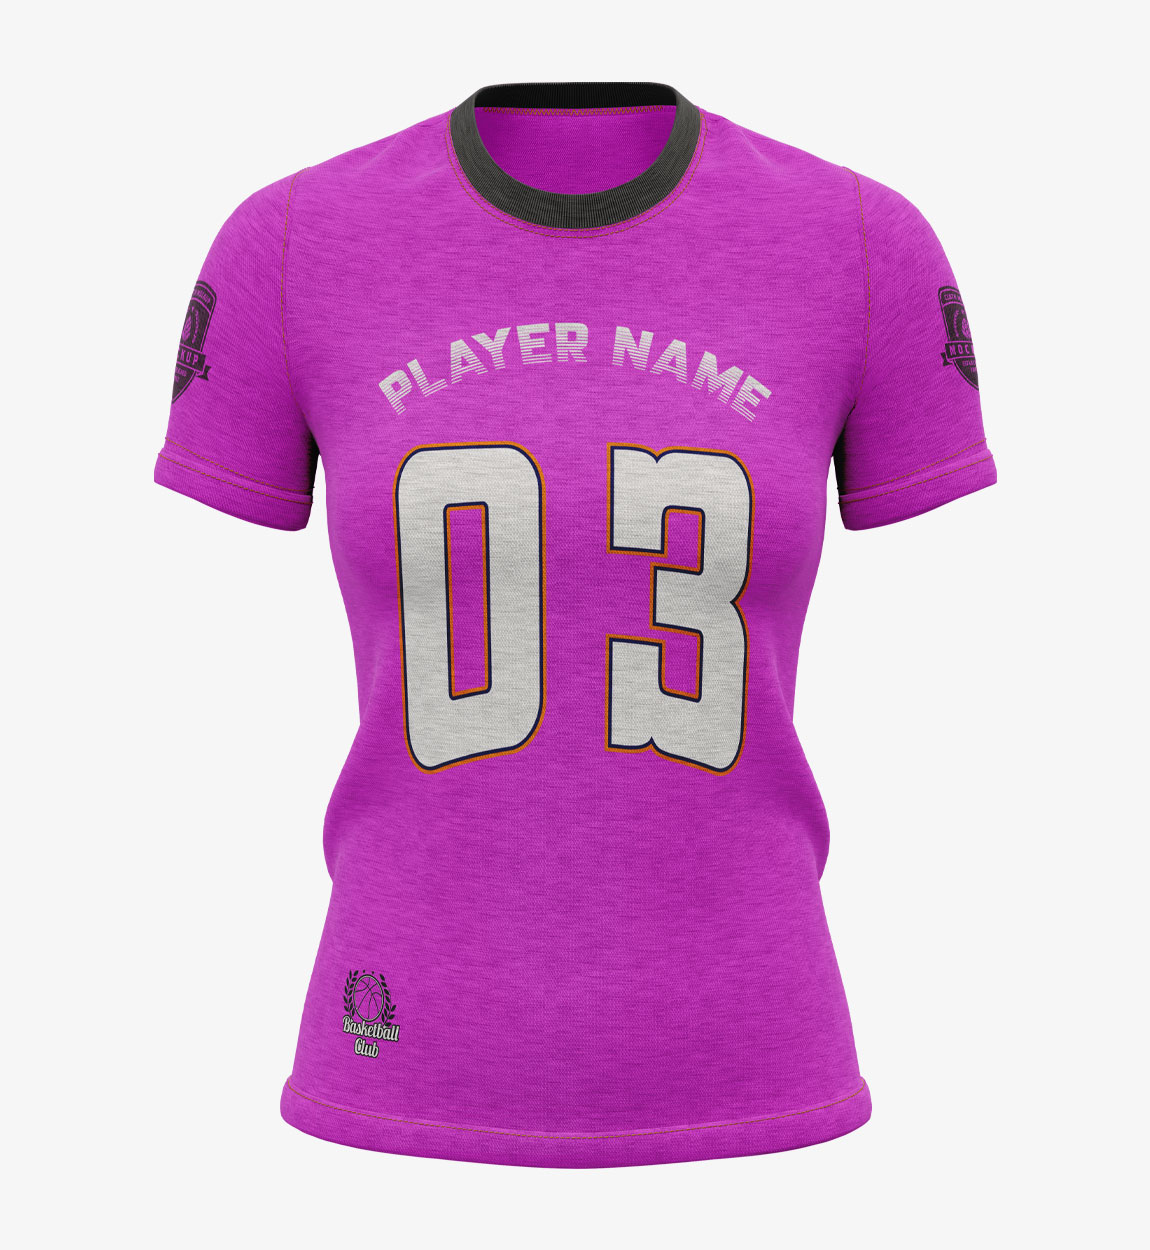 Women Soccer custom t-shirt